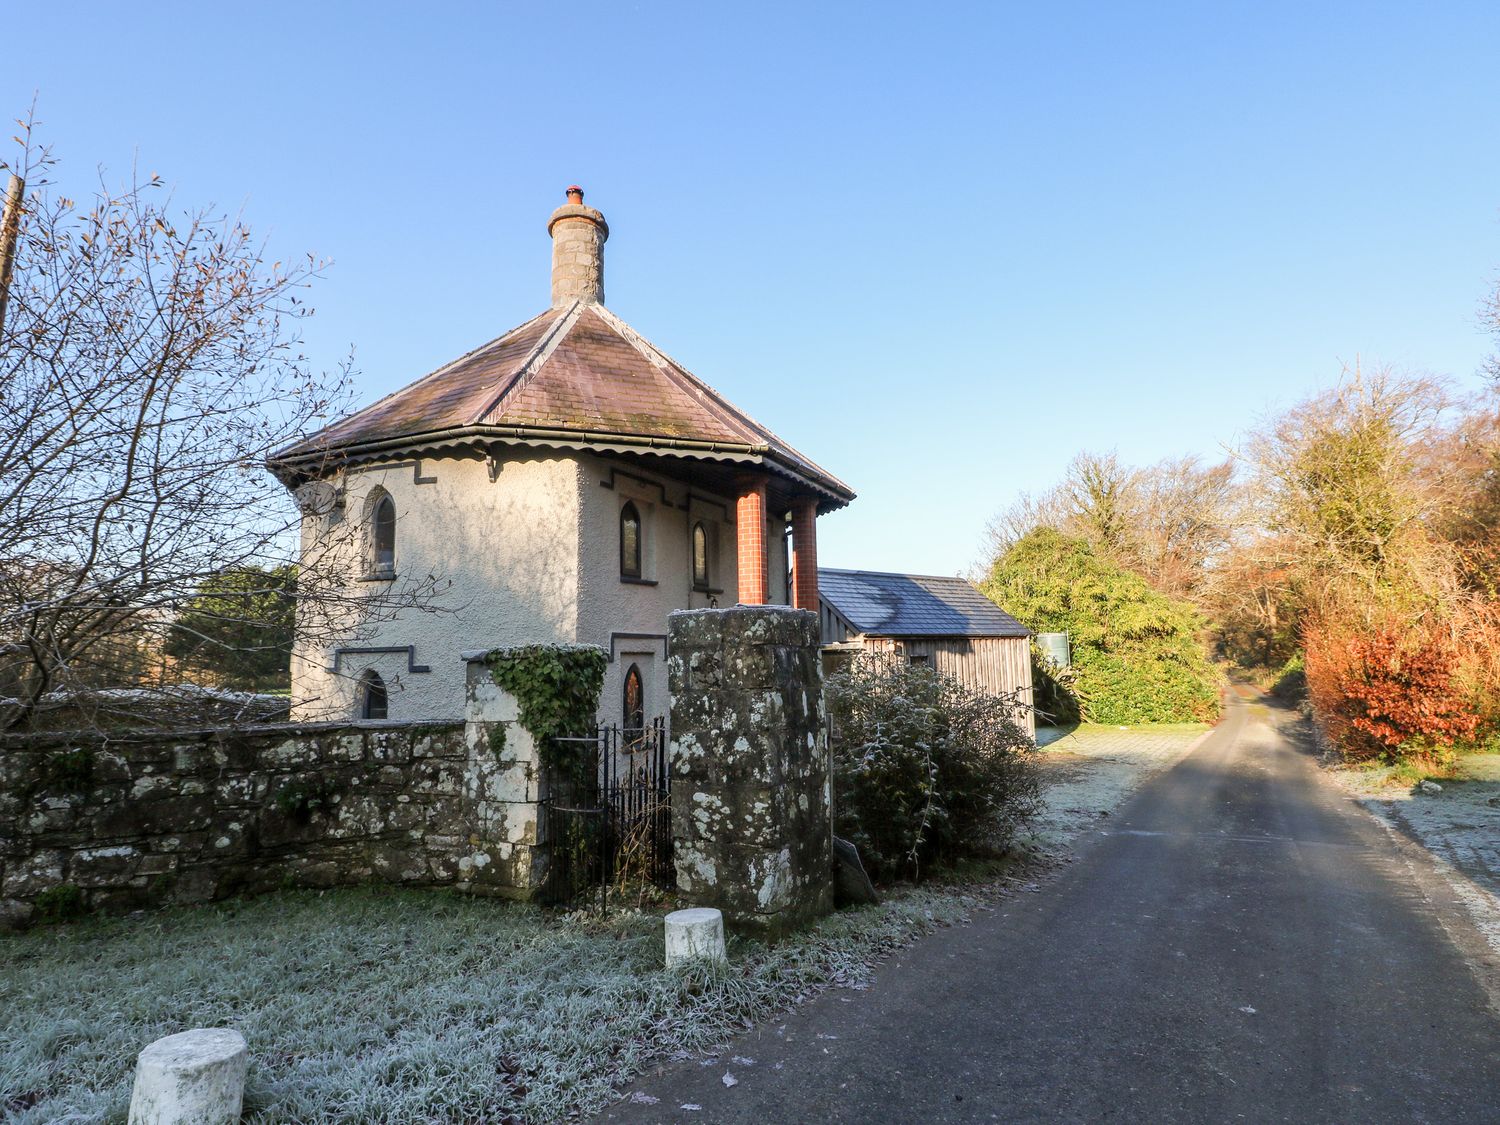 Llwyngwair Manor Lodge